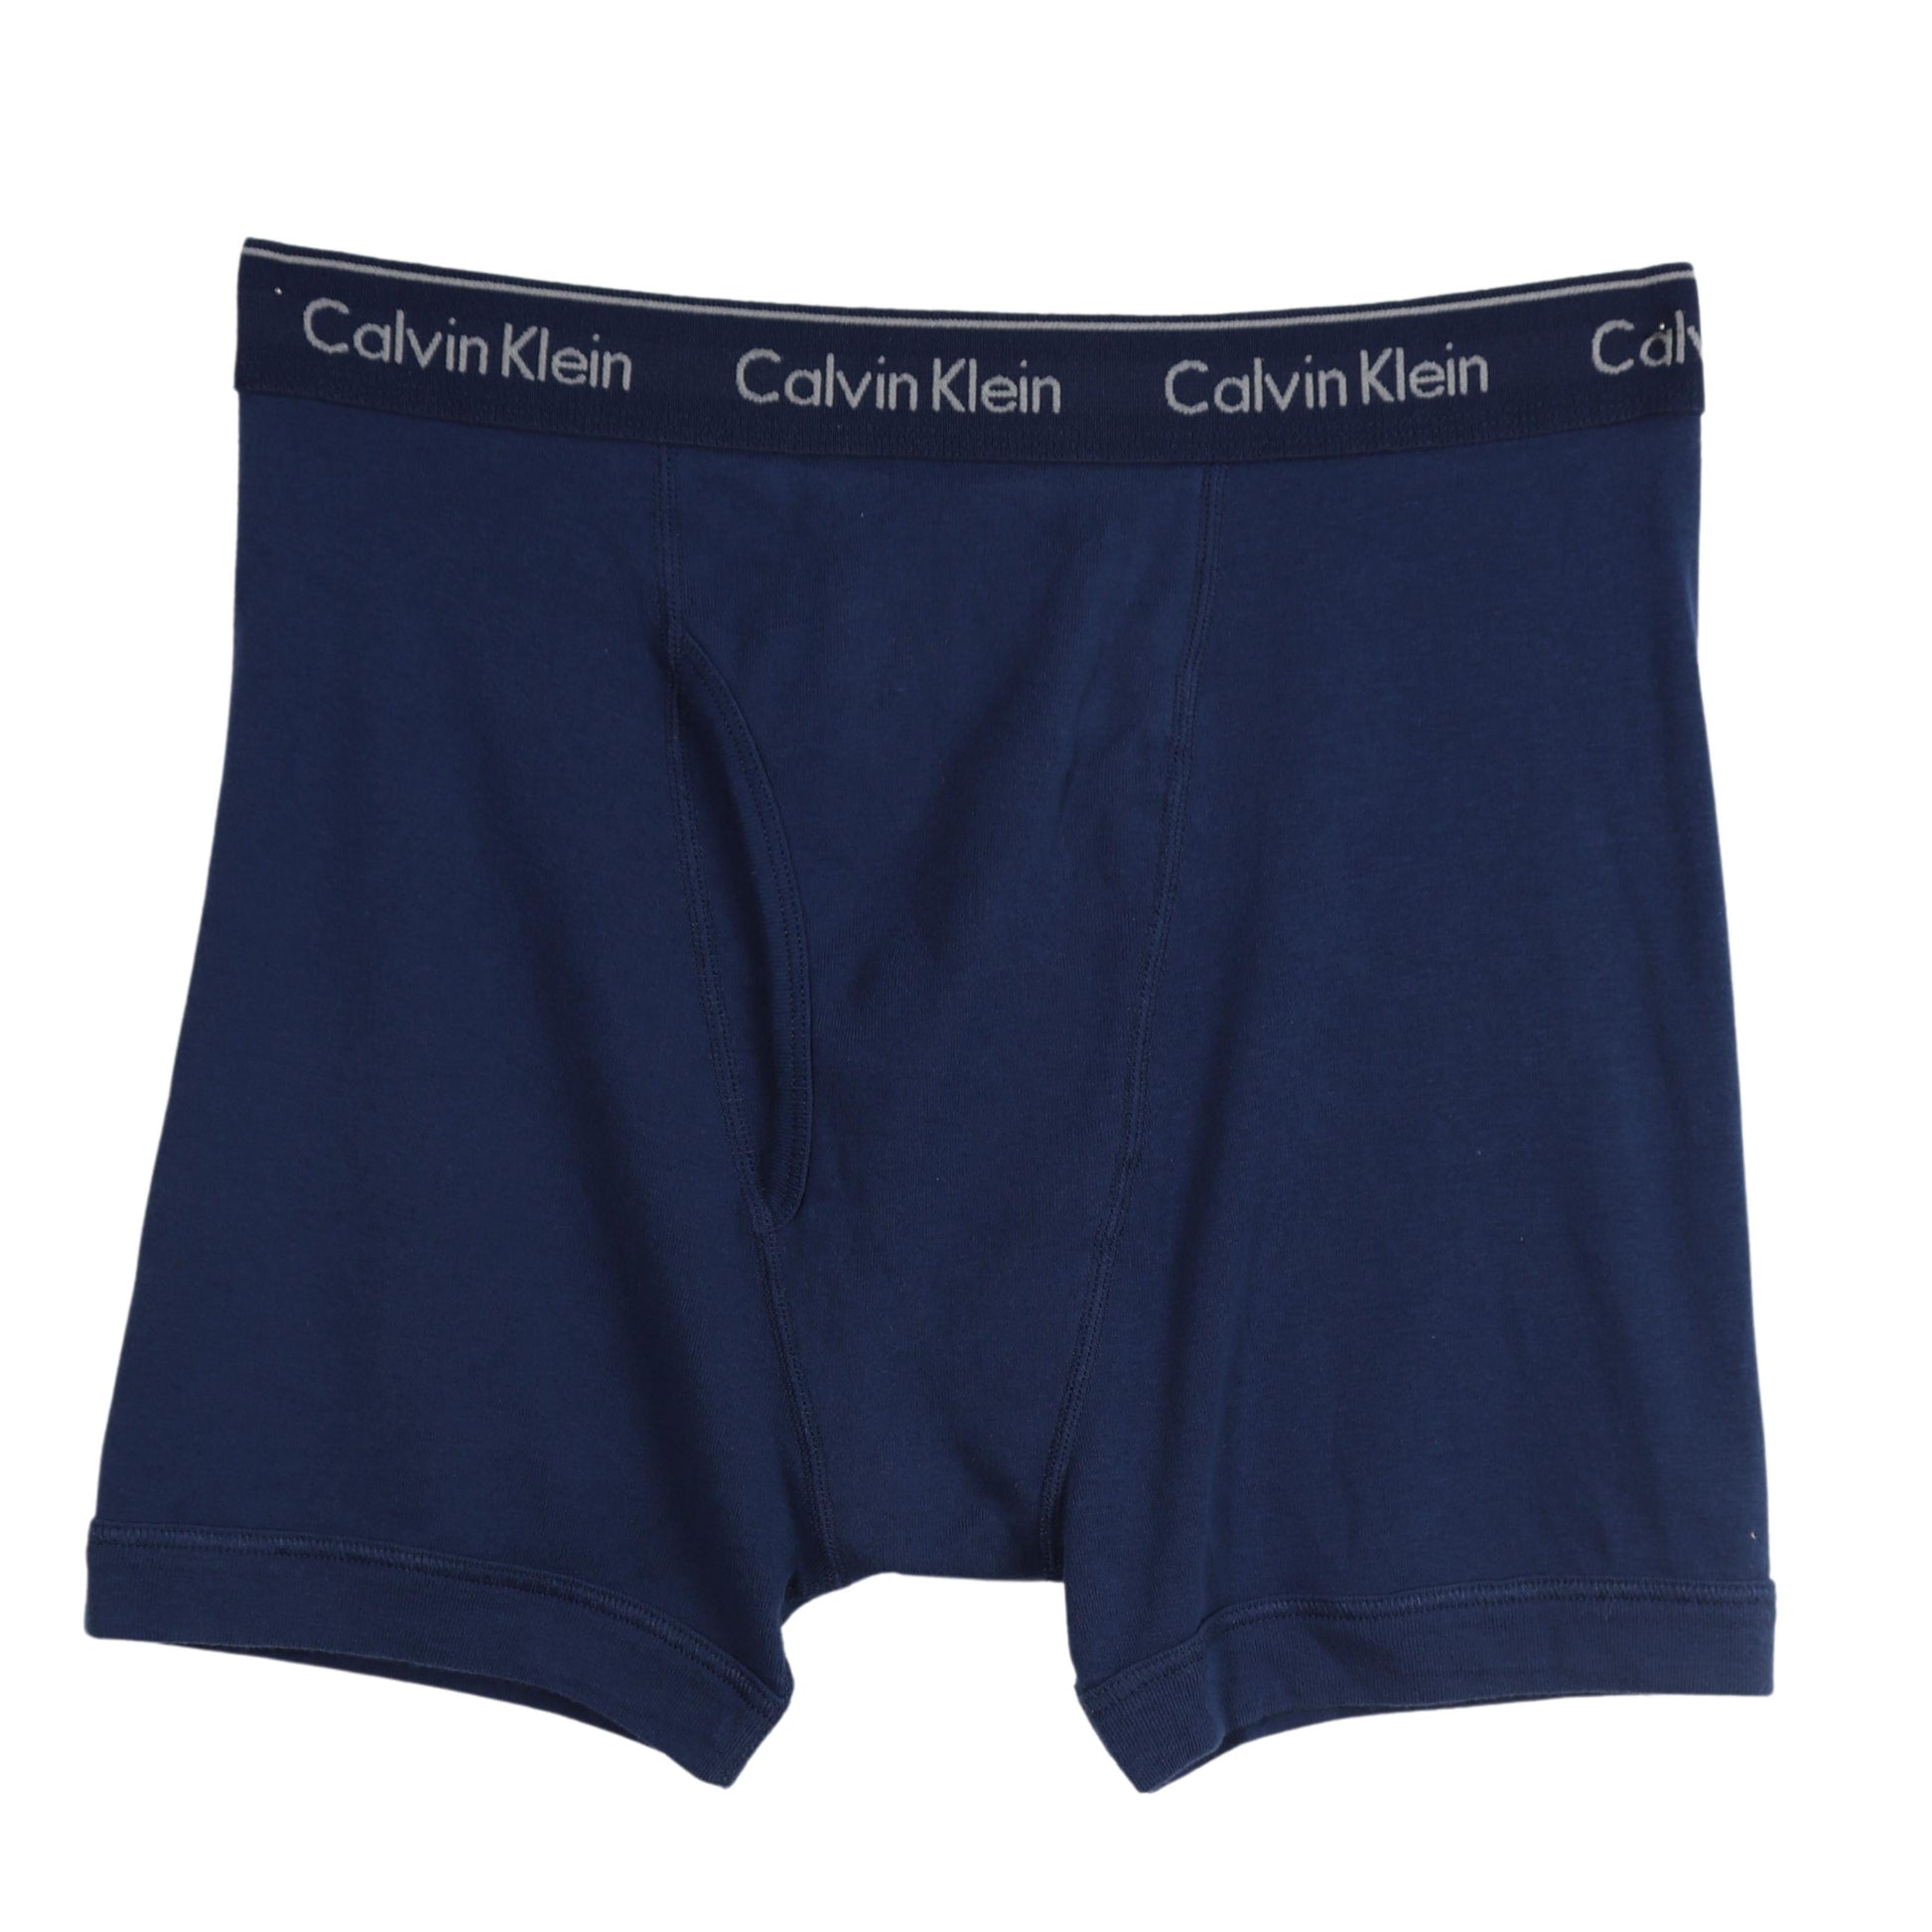 CALVIN KLEIN Mens Underwear L / Navy CALVIN KLEIN - Elastic Waist Boxer